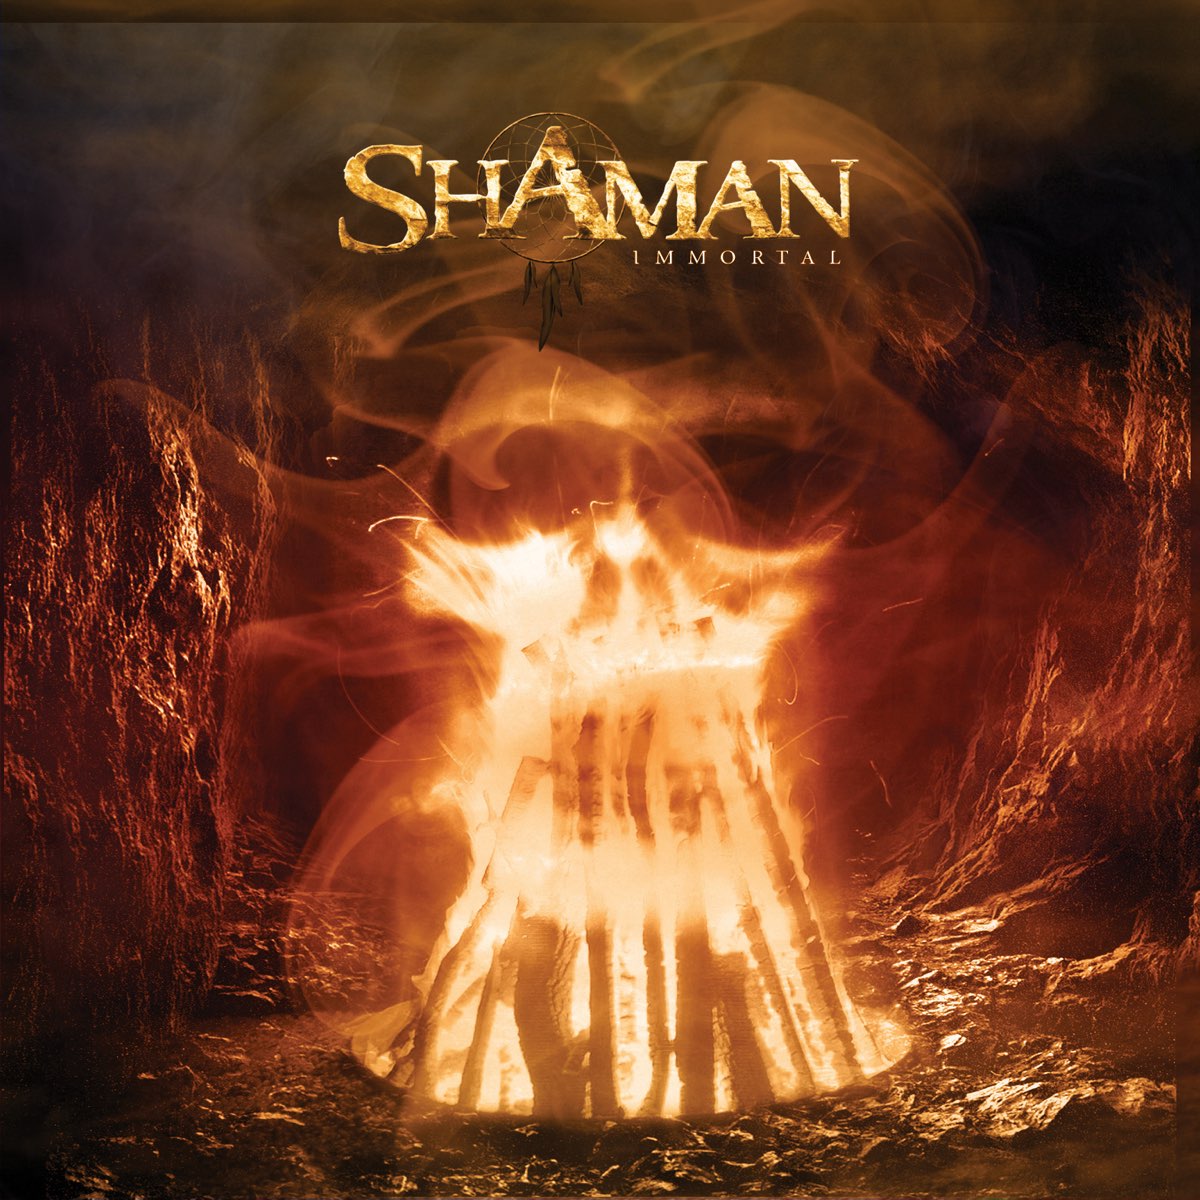 Shaman живой песня. Shaman обложка альбома. Shaman 2007 Immortal. Shaman надпись. Shaman певец обложки альбомов.